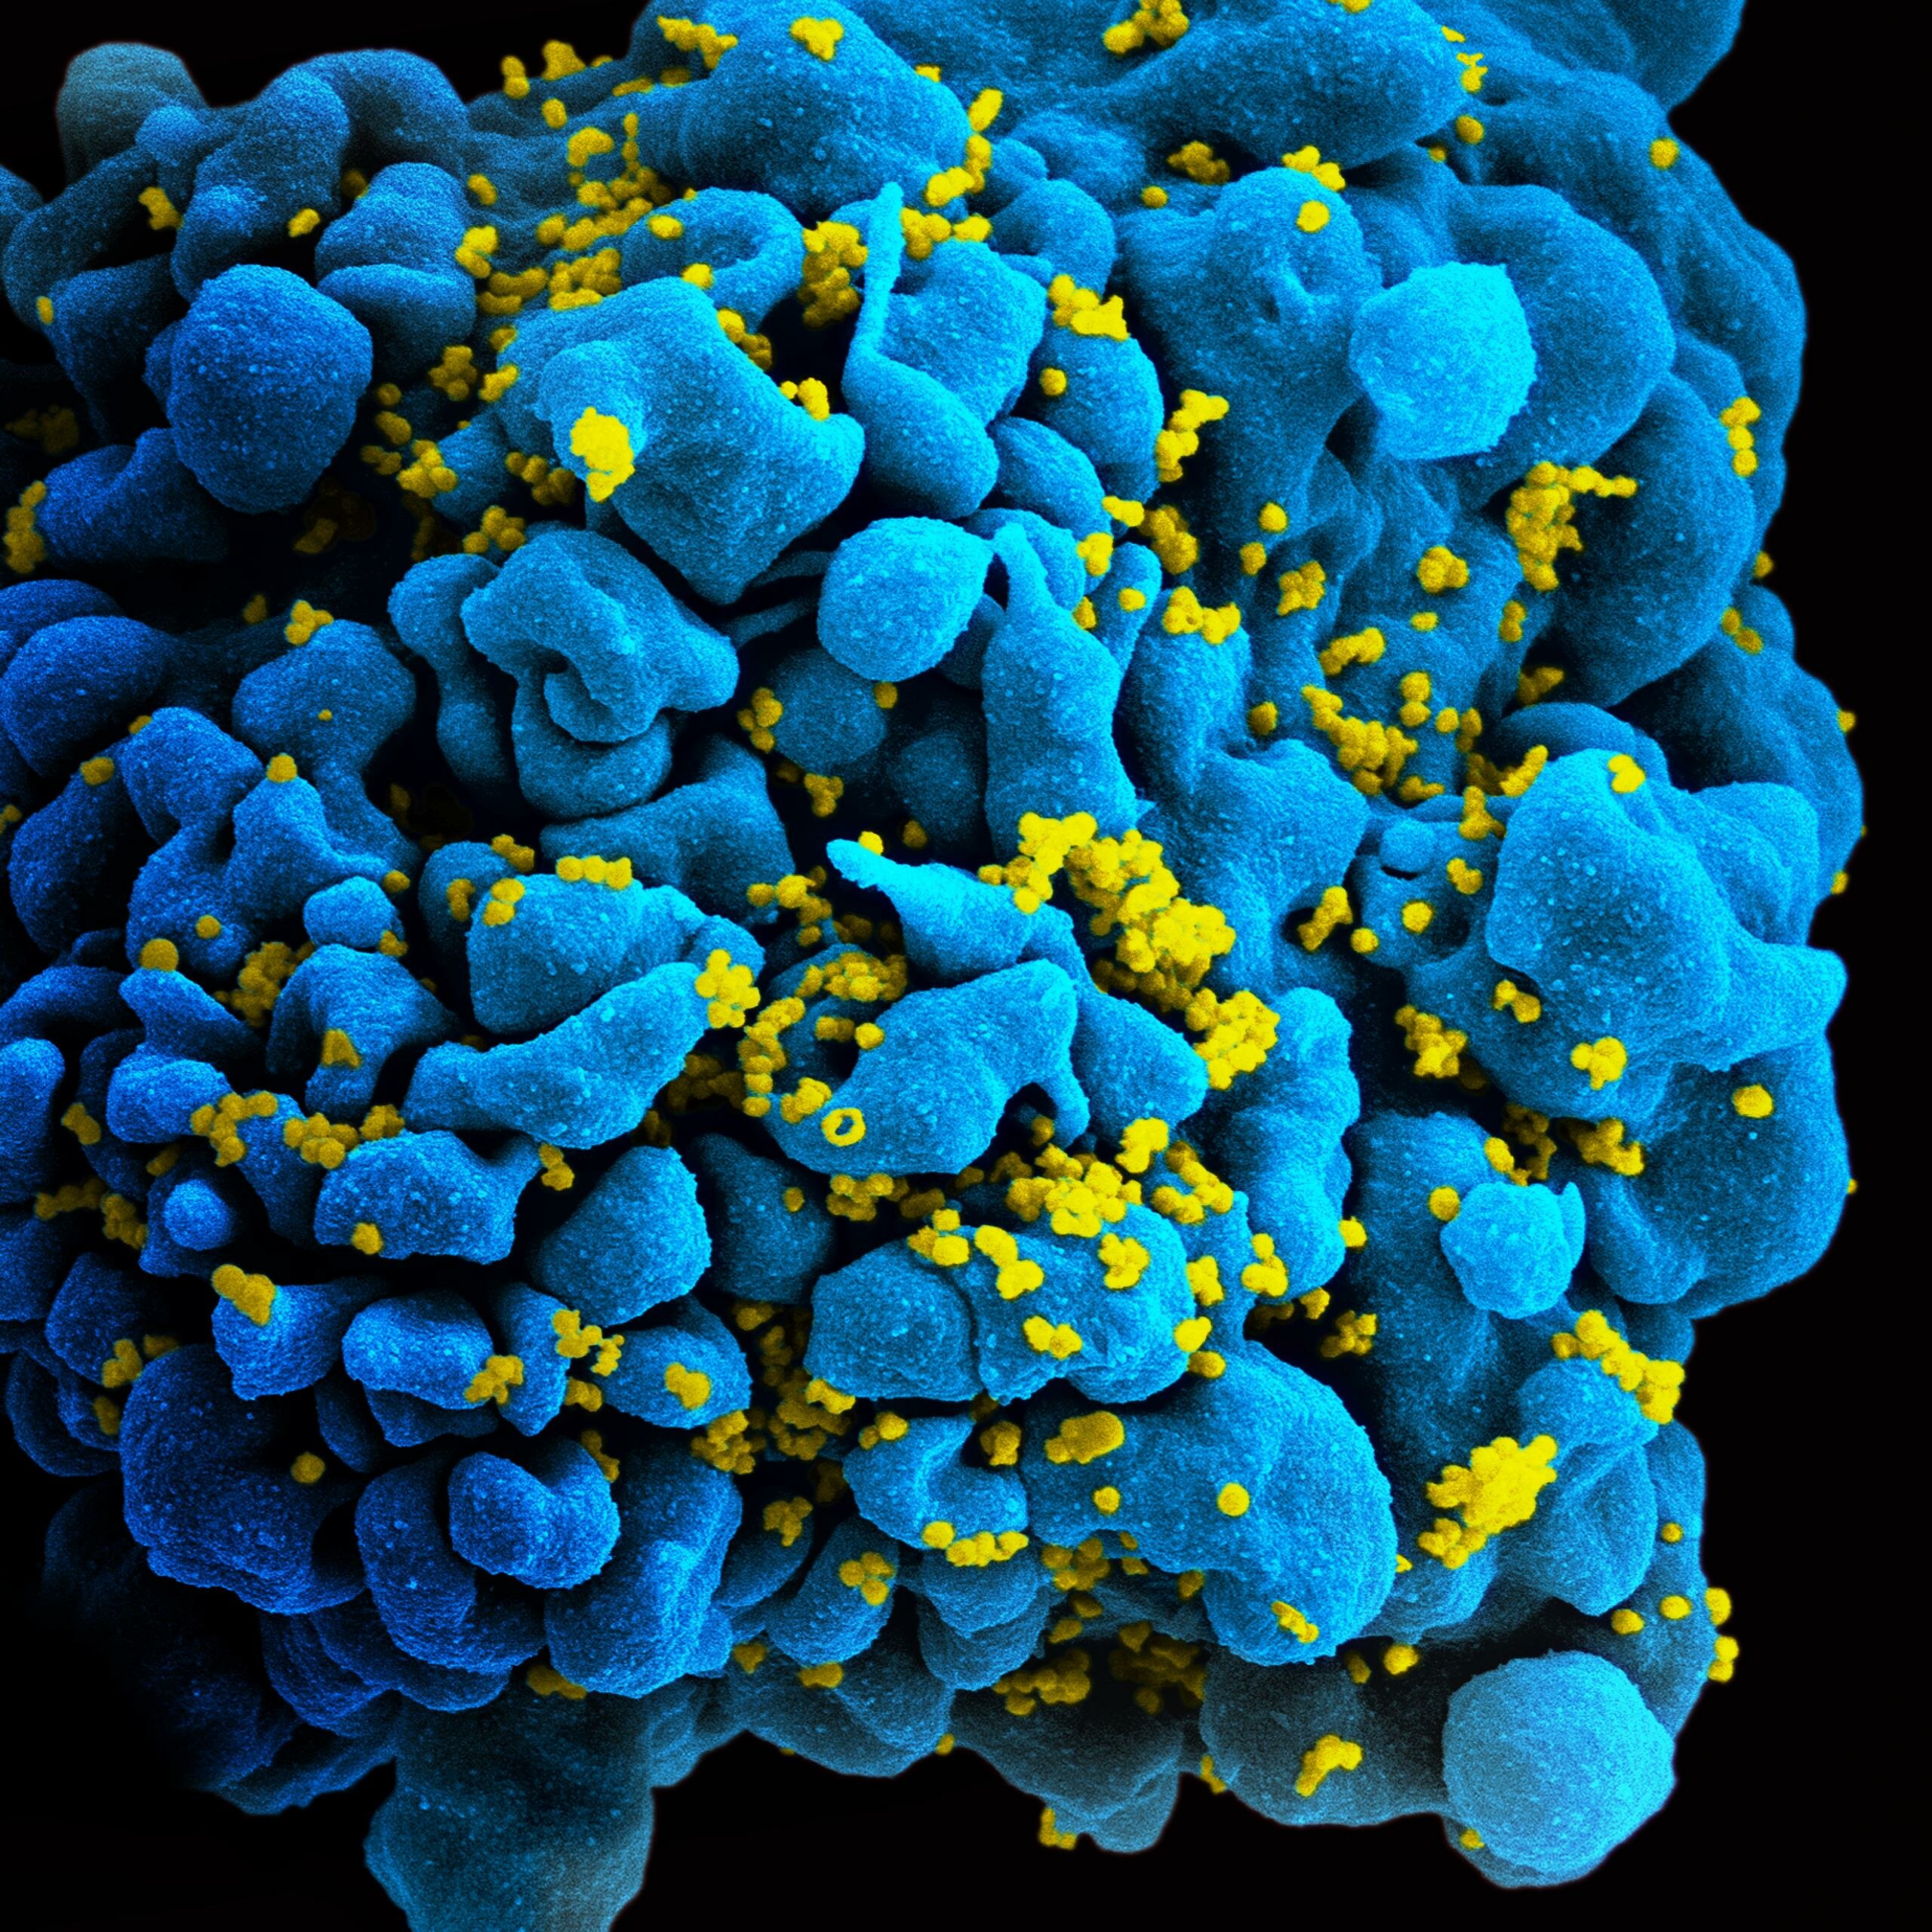 Изображение T-лимфоцита, зараженного ВИЧ, полученное при помощи сканирующей электронной микроскопии